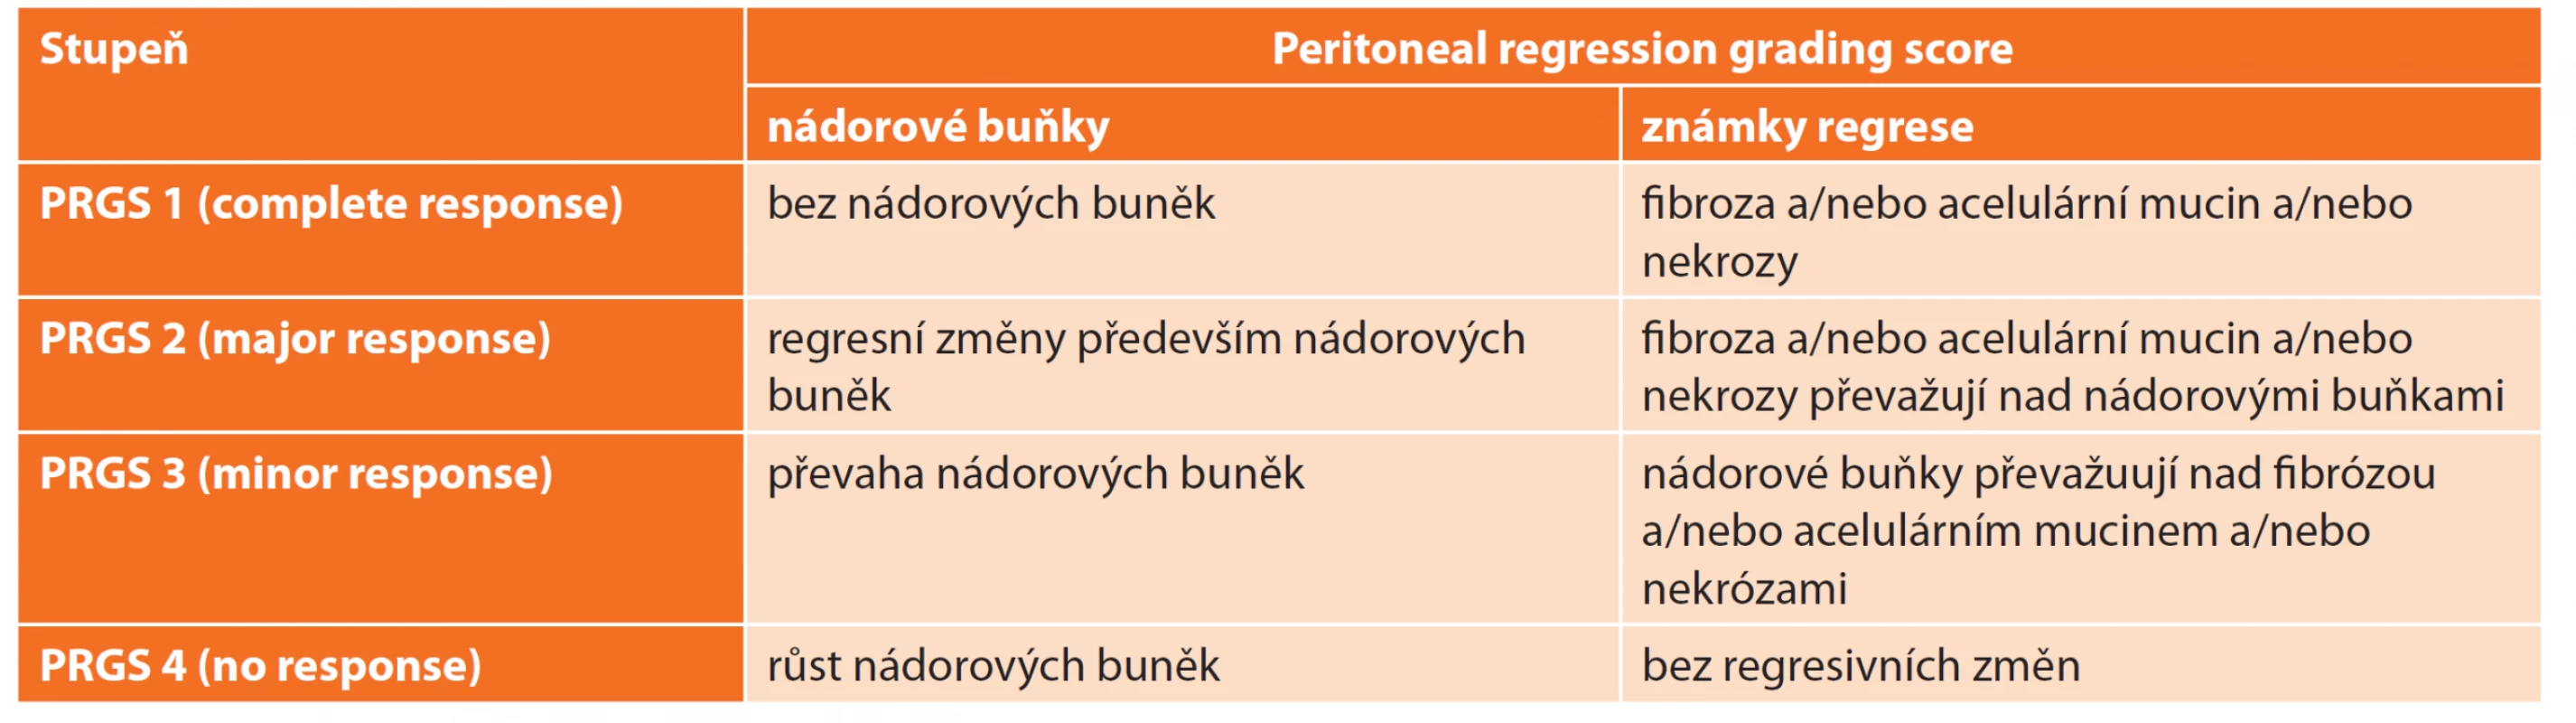 Skóre regrese peritoneálních metastáz [8]<br>
Tab. 1: Peritoneal regression grading score [8]